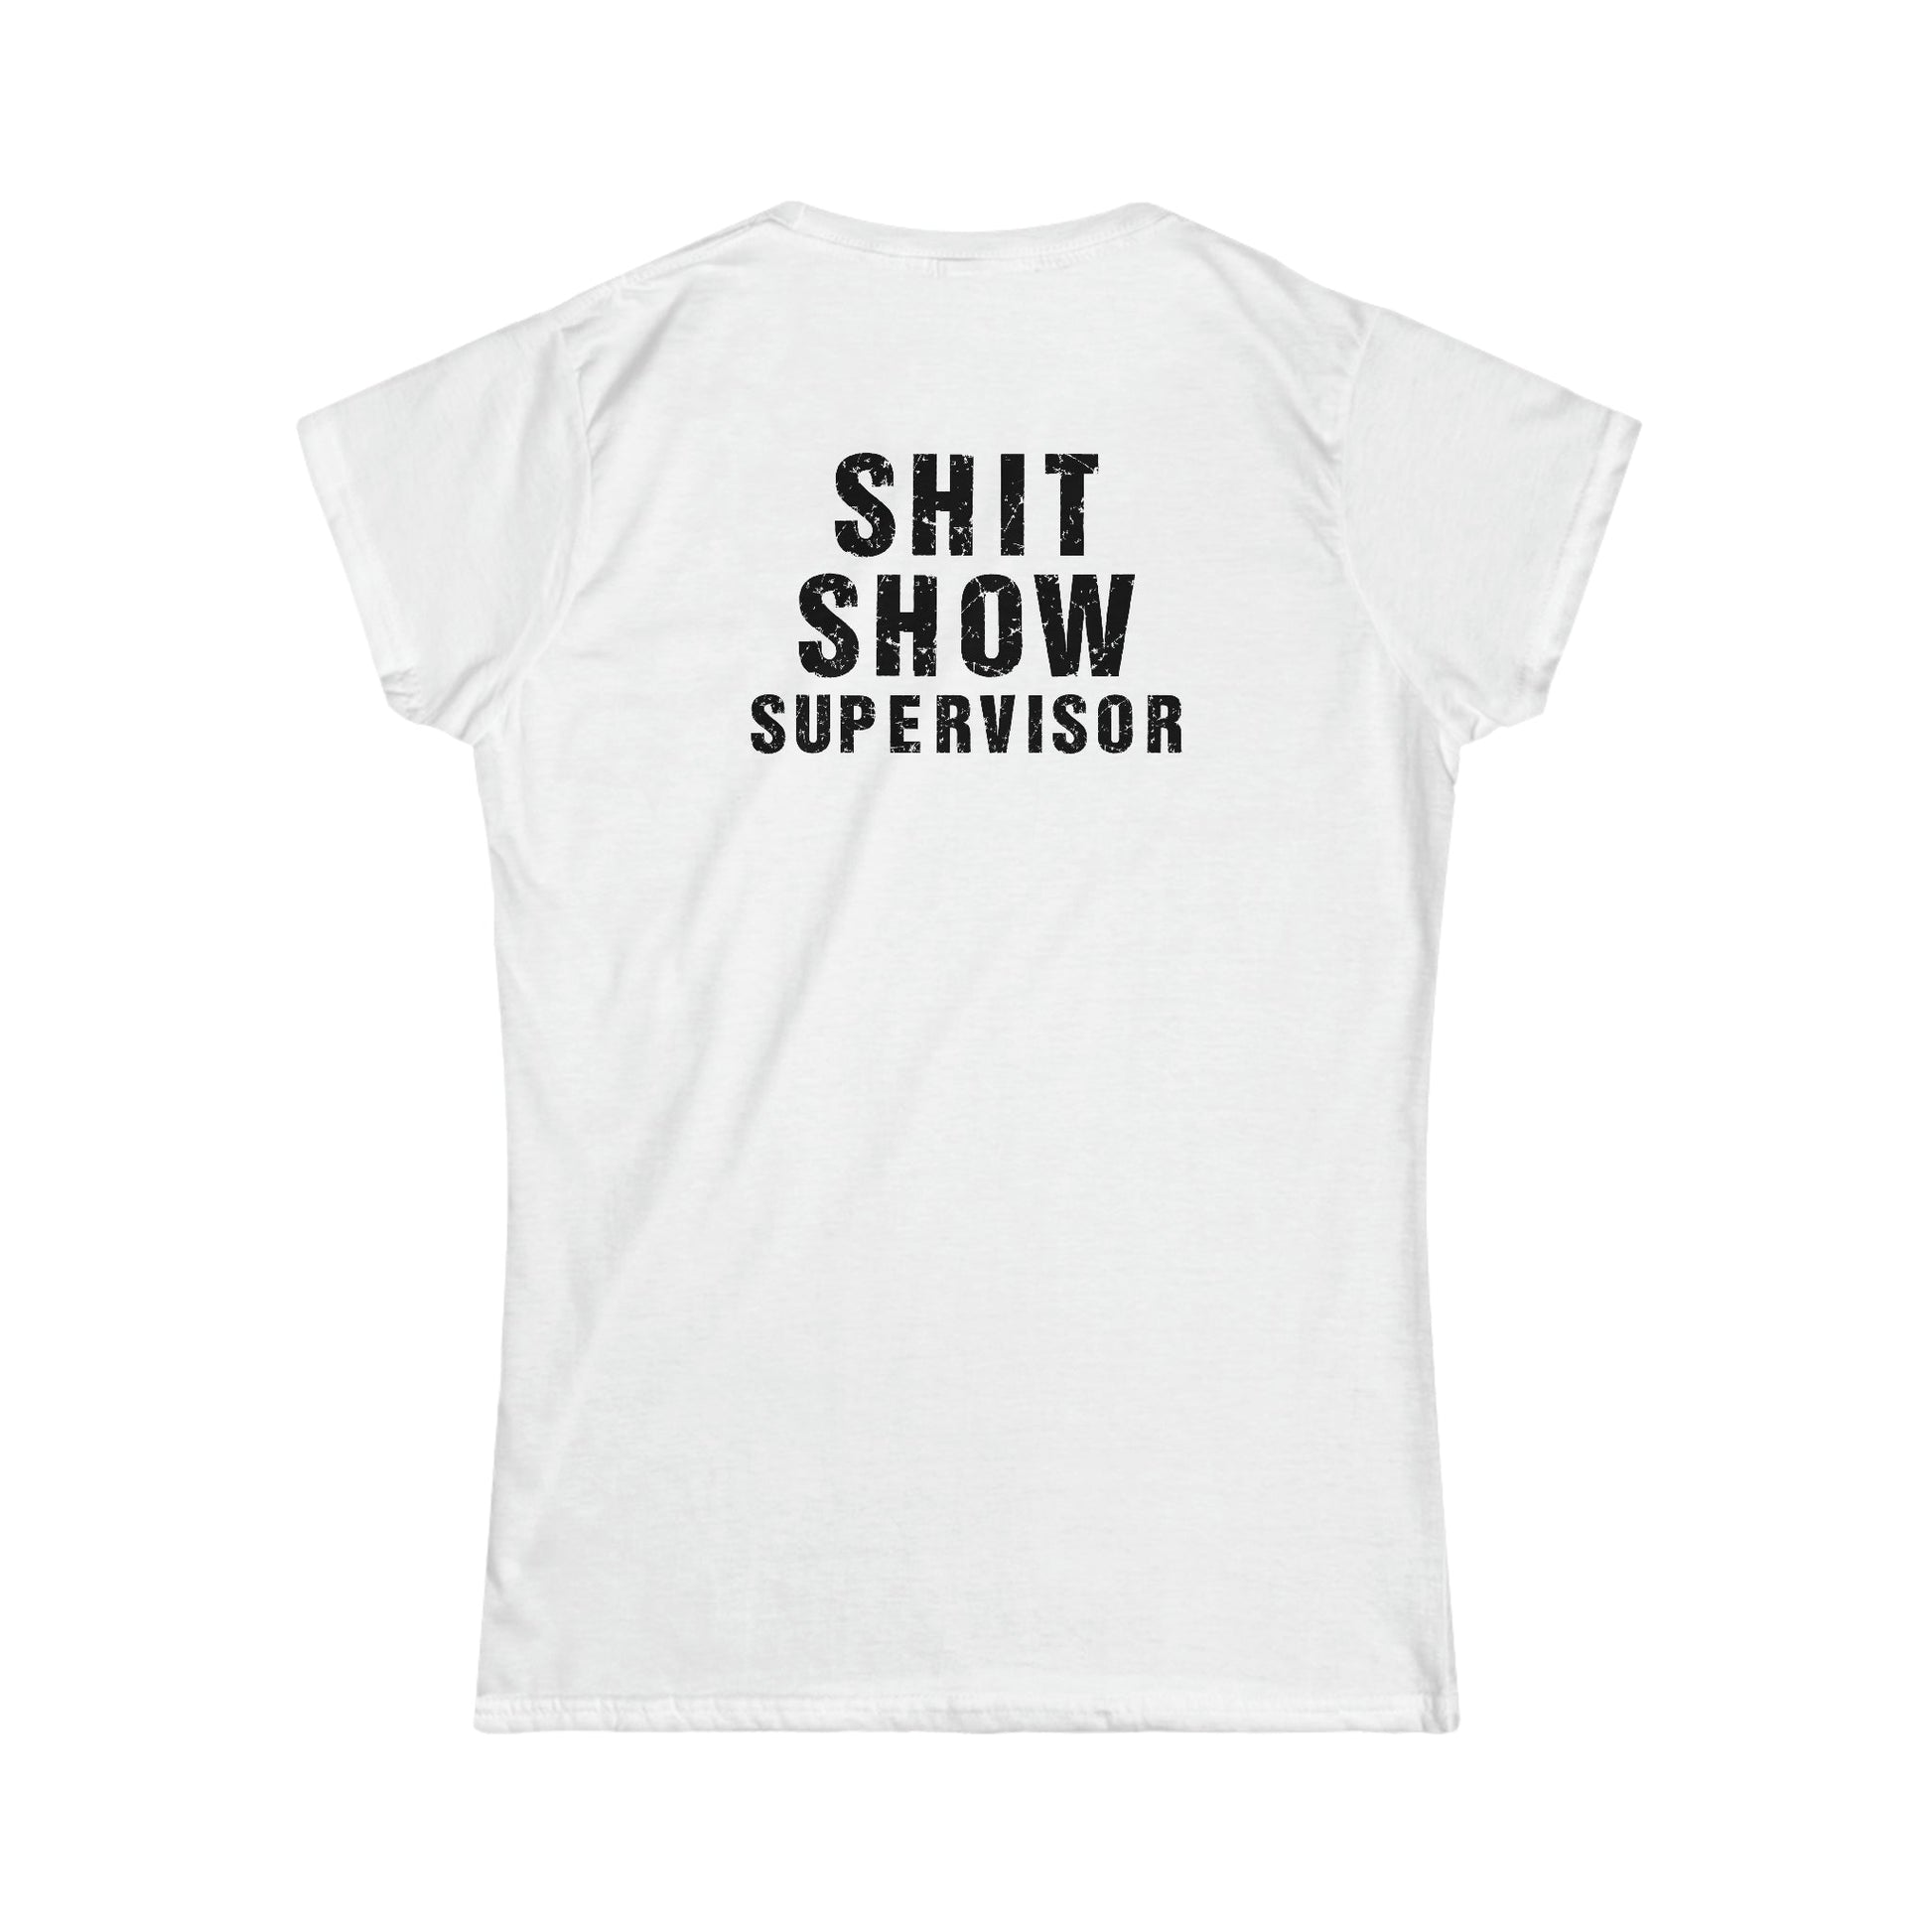 CrazyYetiClothing, CYC, Here We Go (Women's Softstyle Tee, Explicit, Supervisor Back Image), T-Shirt